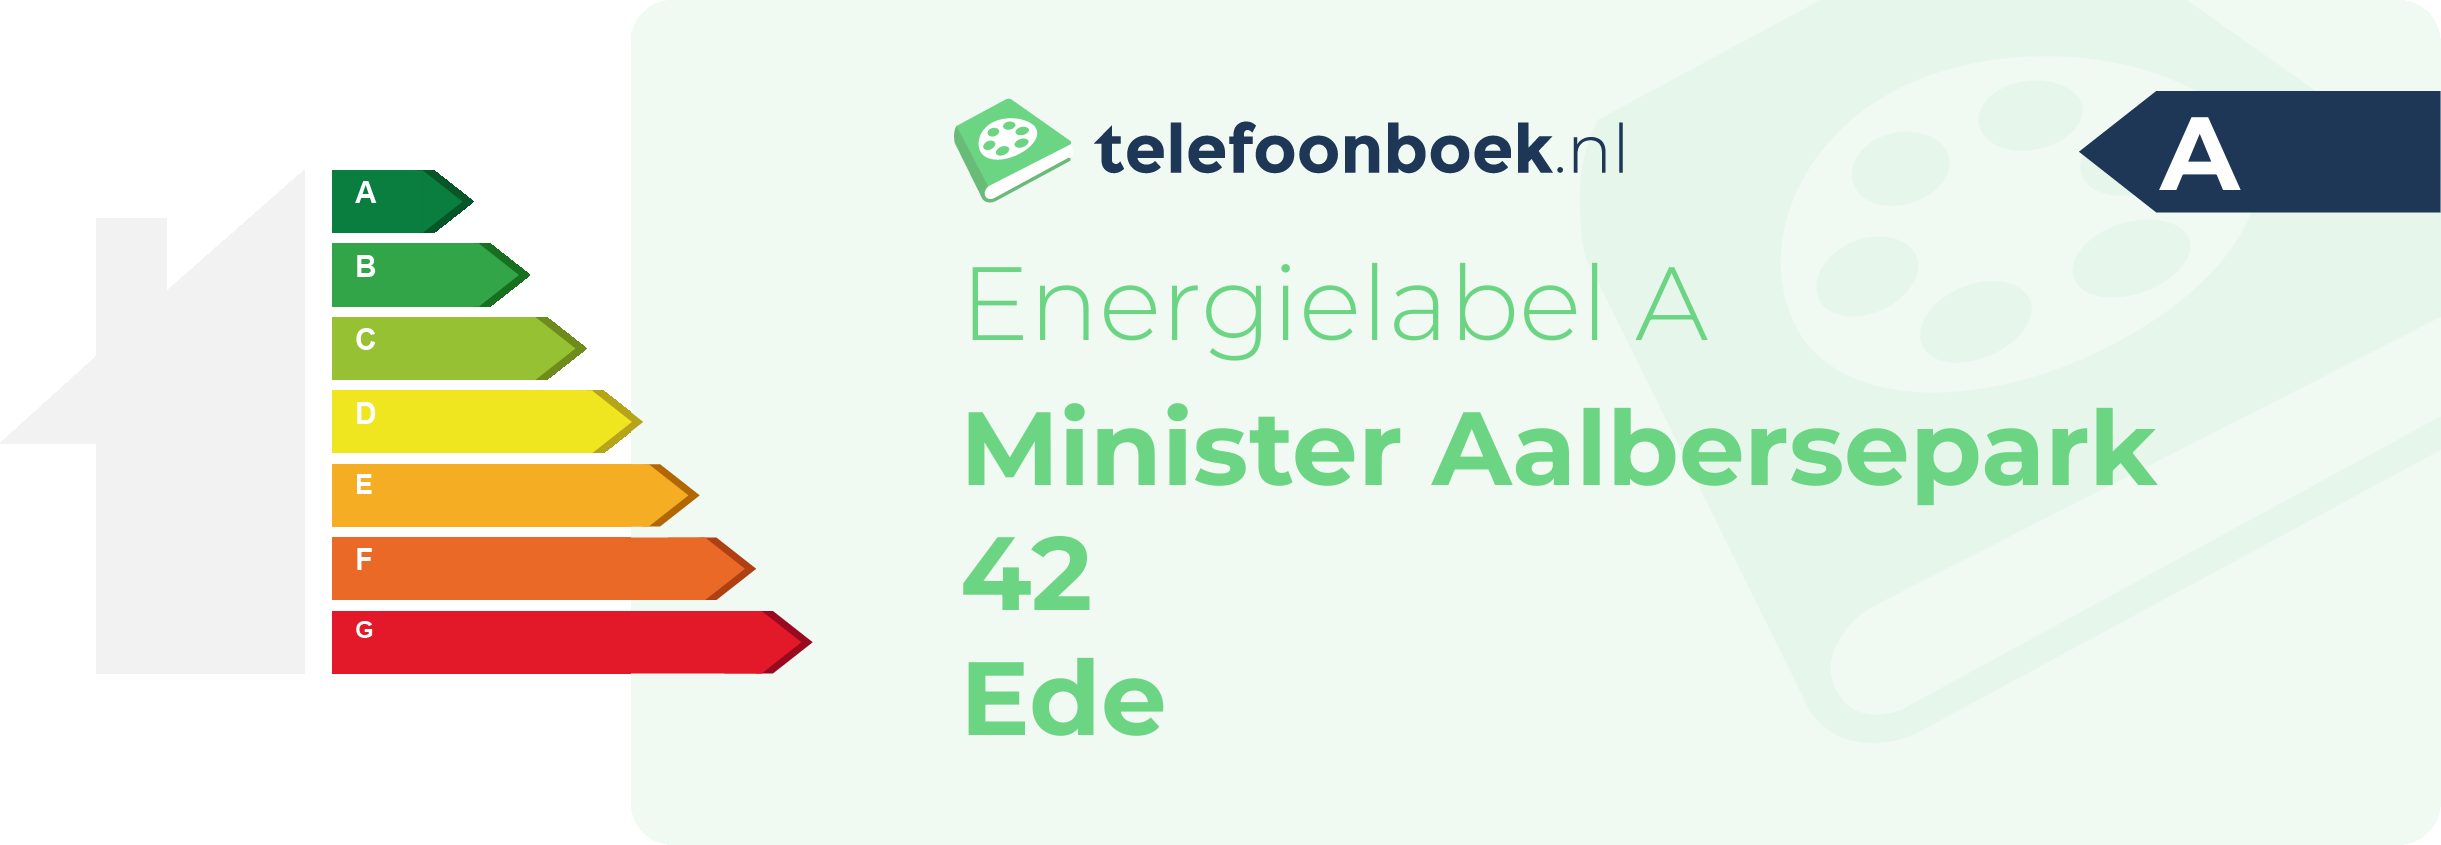 Energielabel Minister Aalbersepark 42 Ede